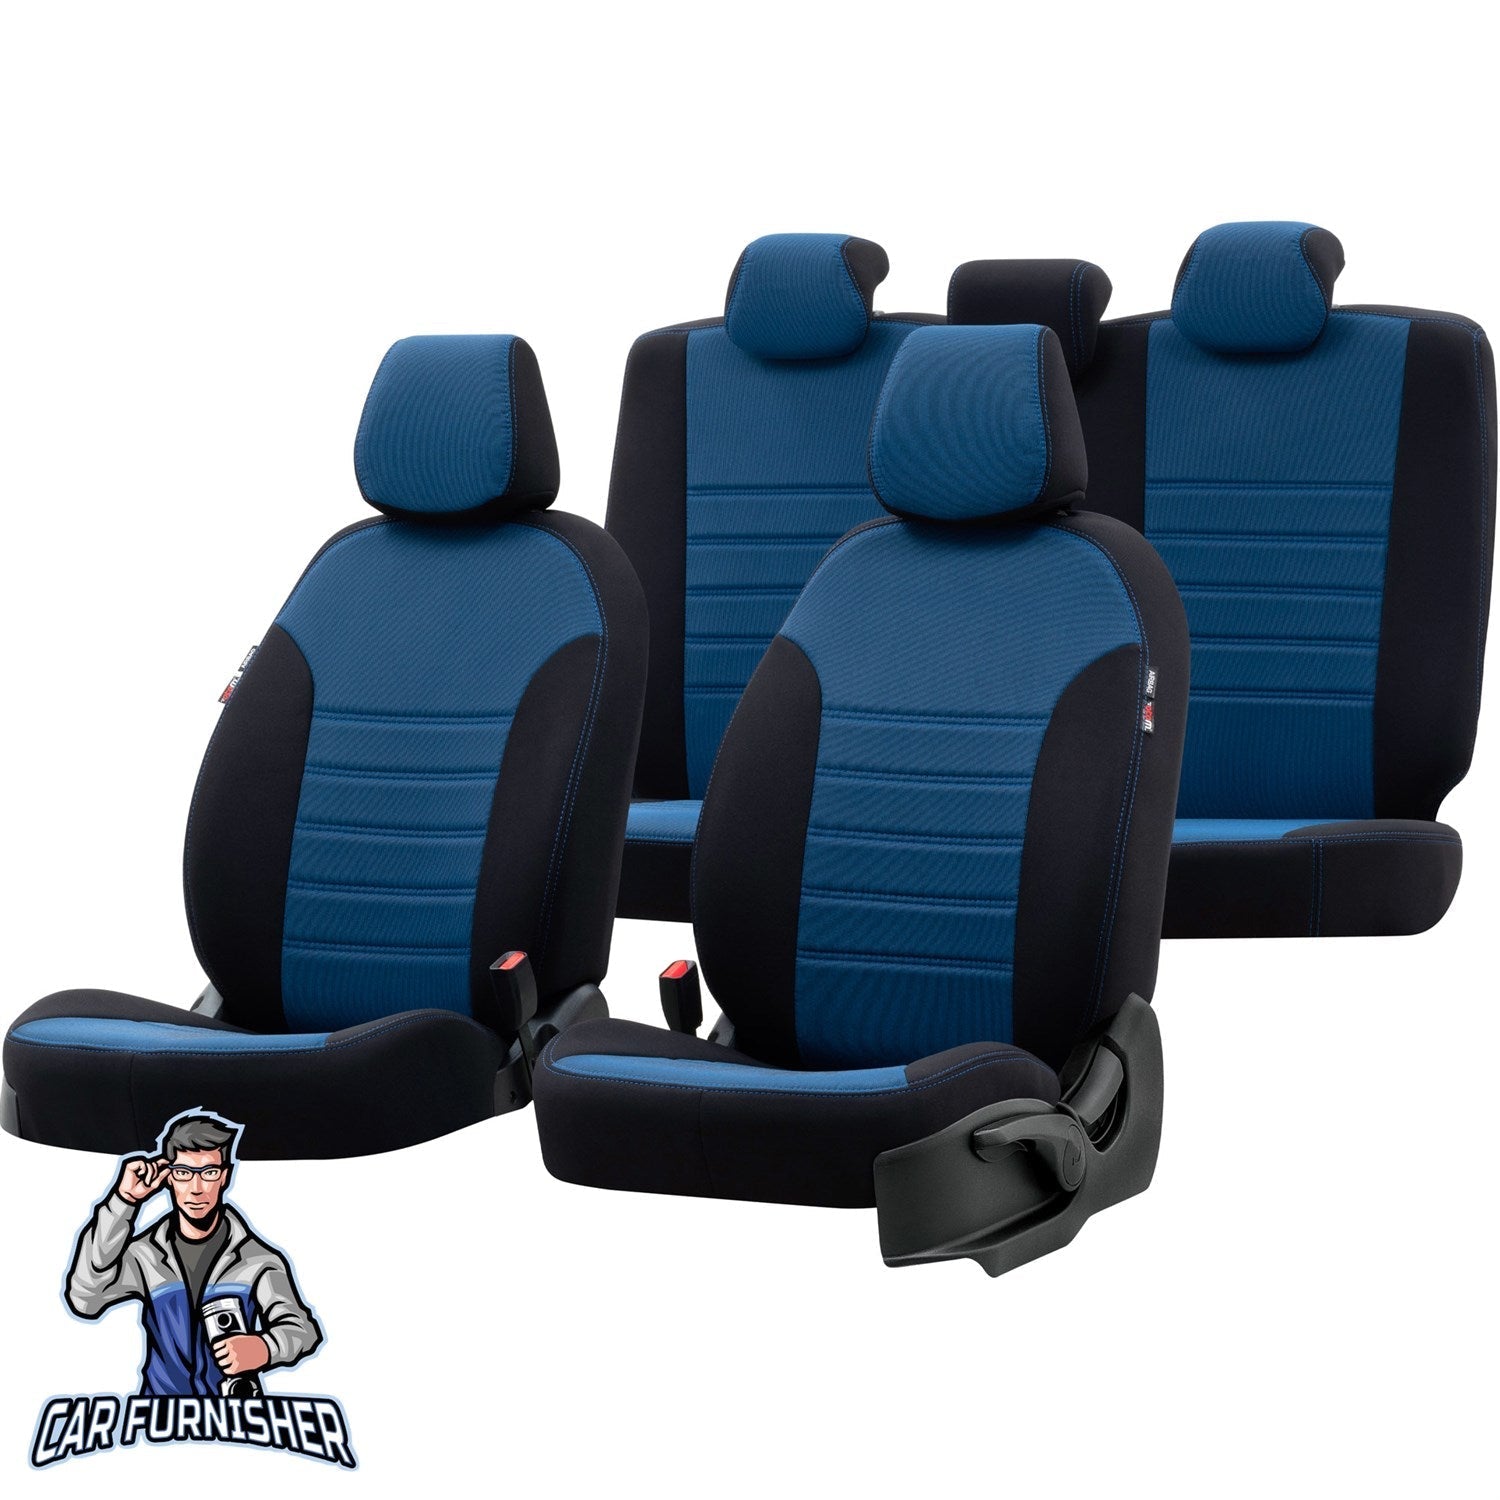 Hyundai i10 Seat Covers Original Jacquard Design Blue Jacquard Fabric